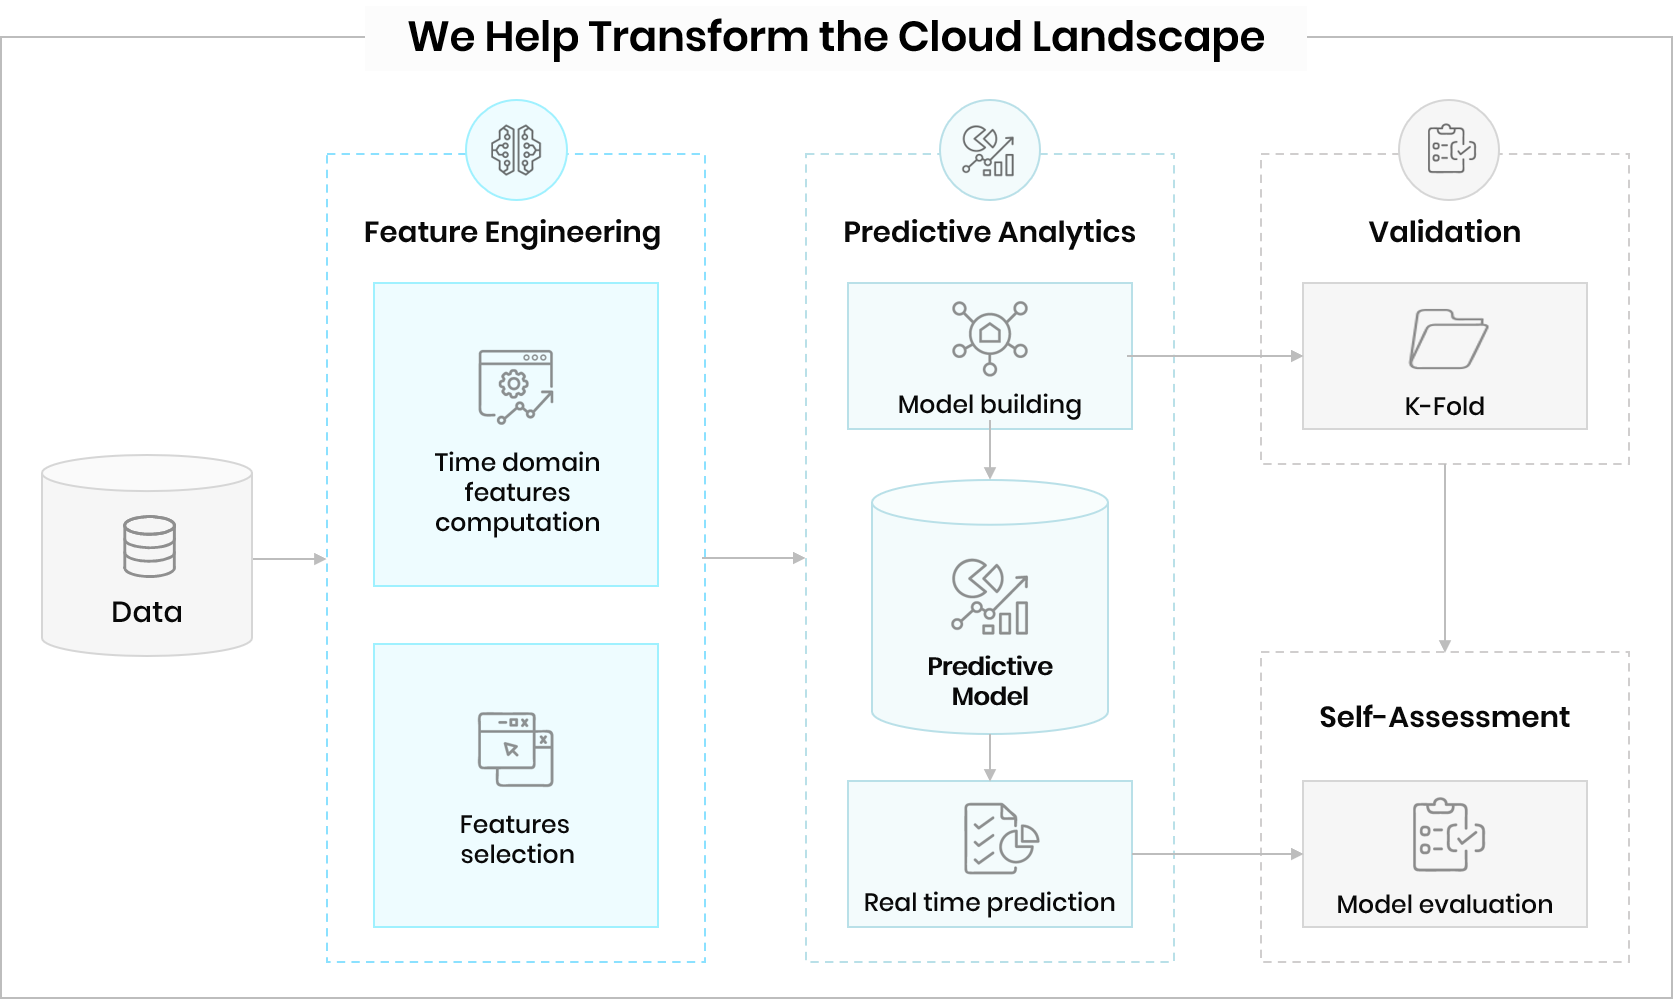 We Help Transform the Cloud Landscape